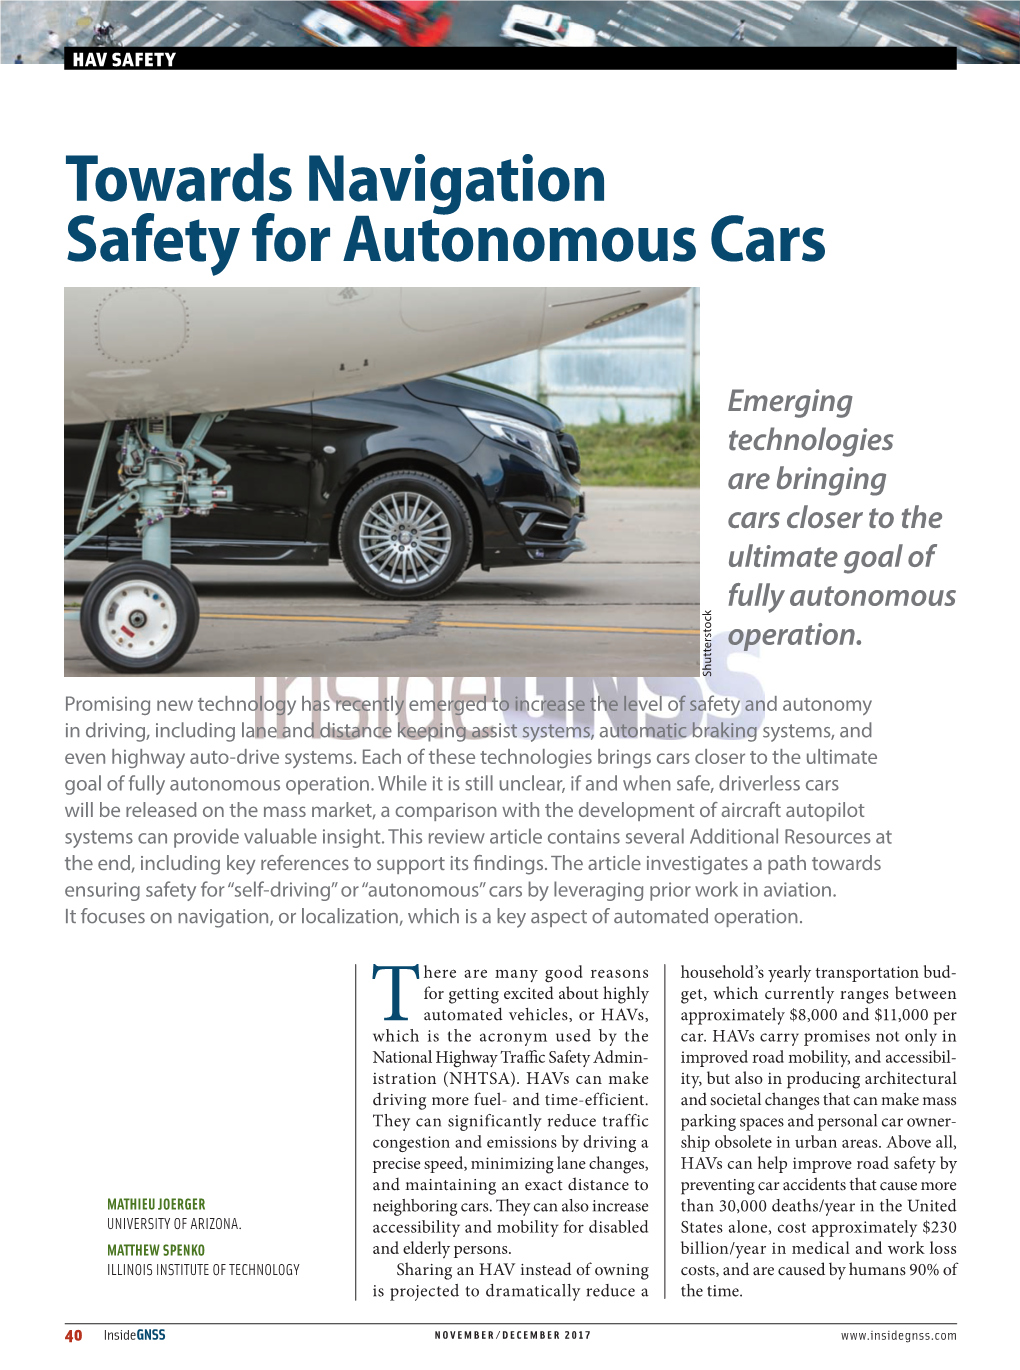 Towards Navigation Safety for Autonomous Cars